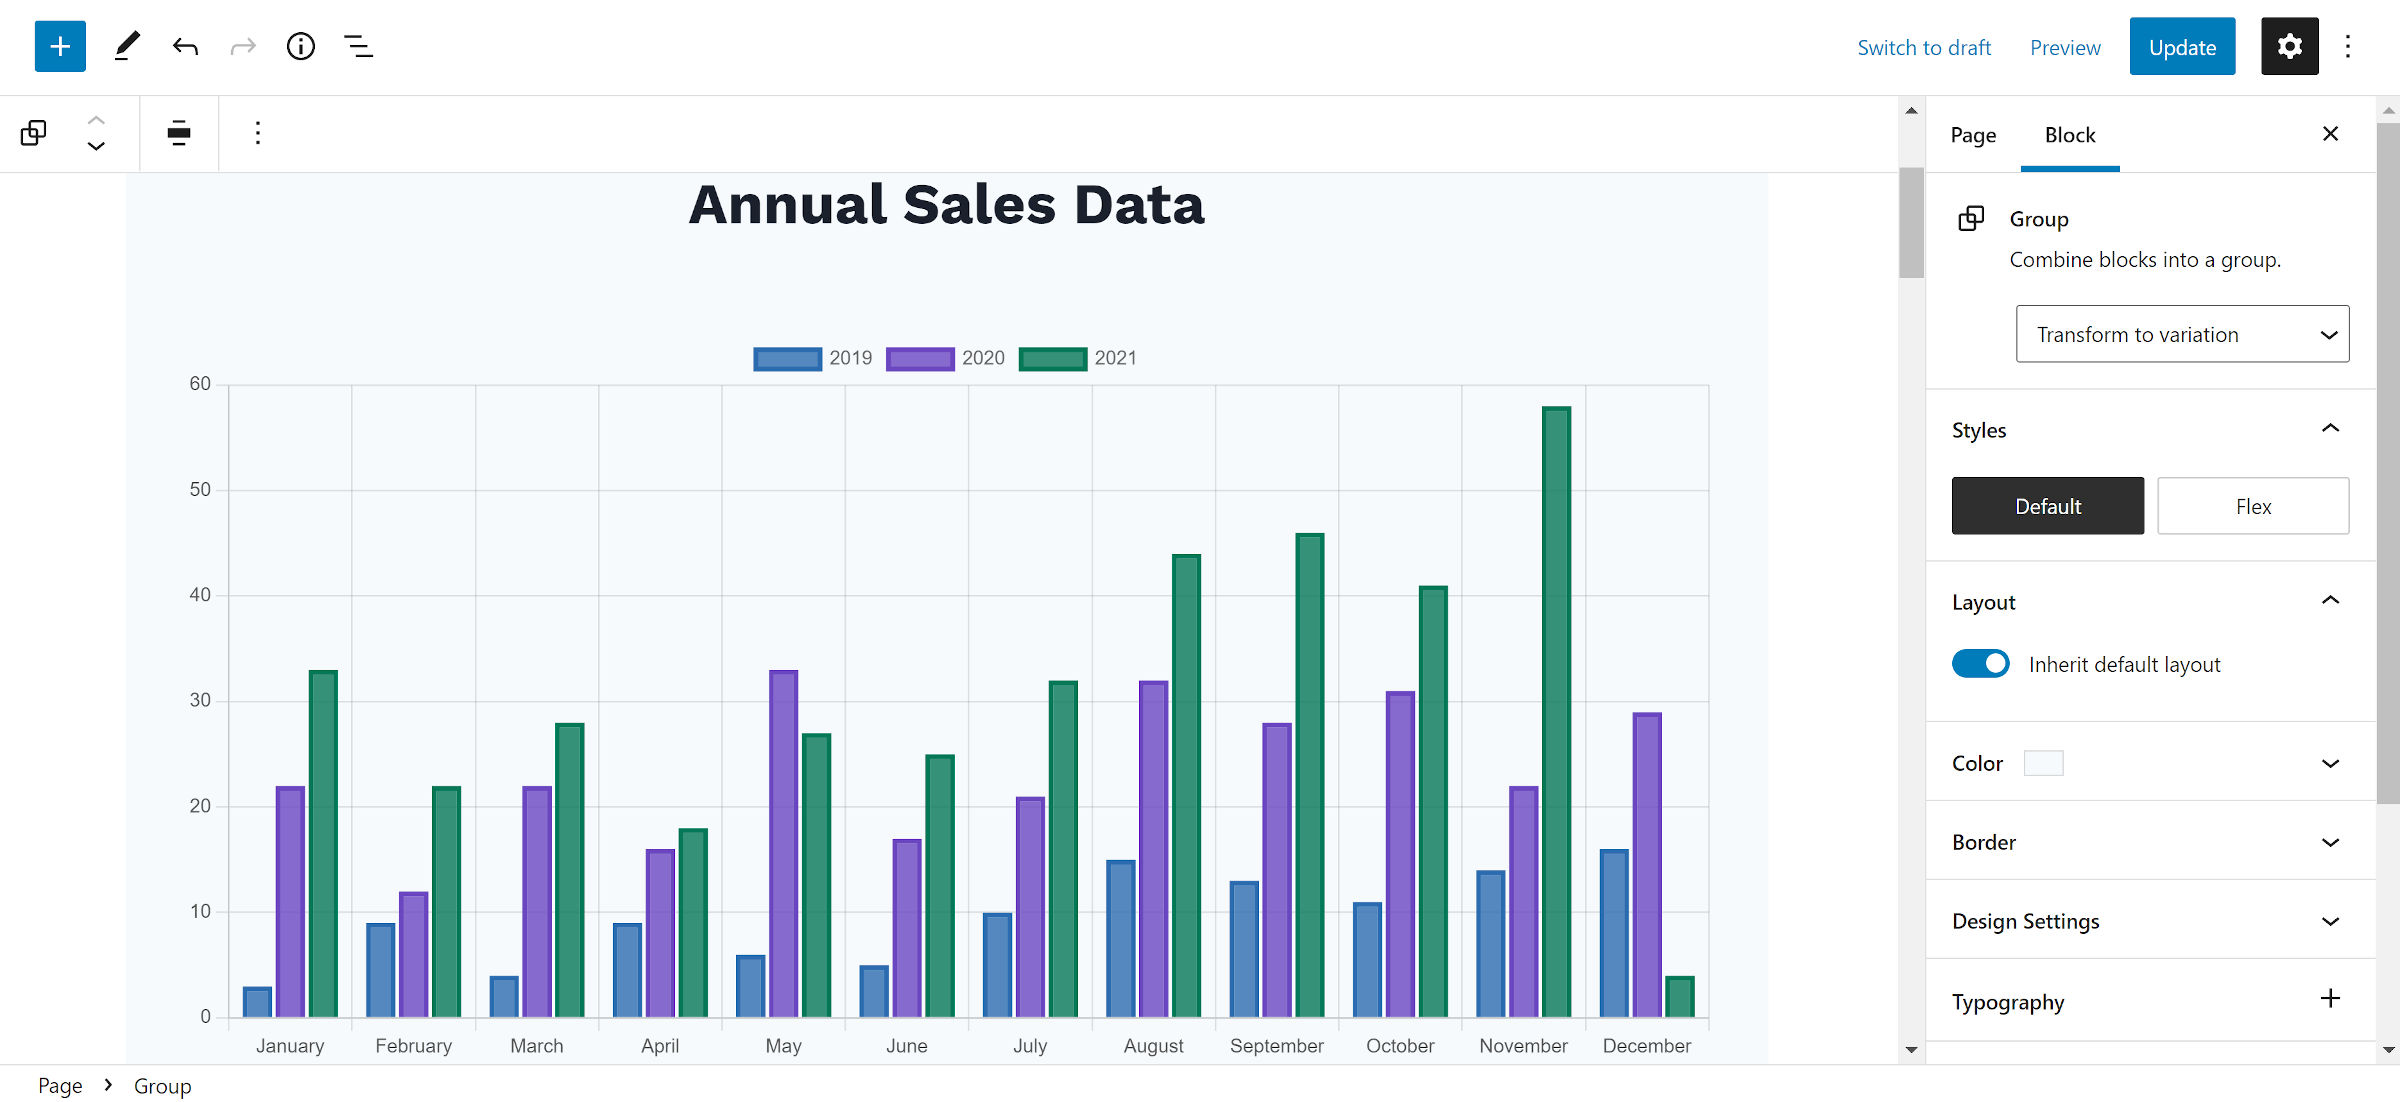 Grafico a barre con dati sulle vendite mensili e un'intestazione sopra.